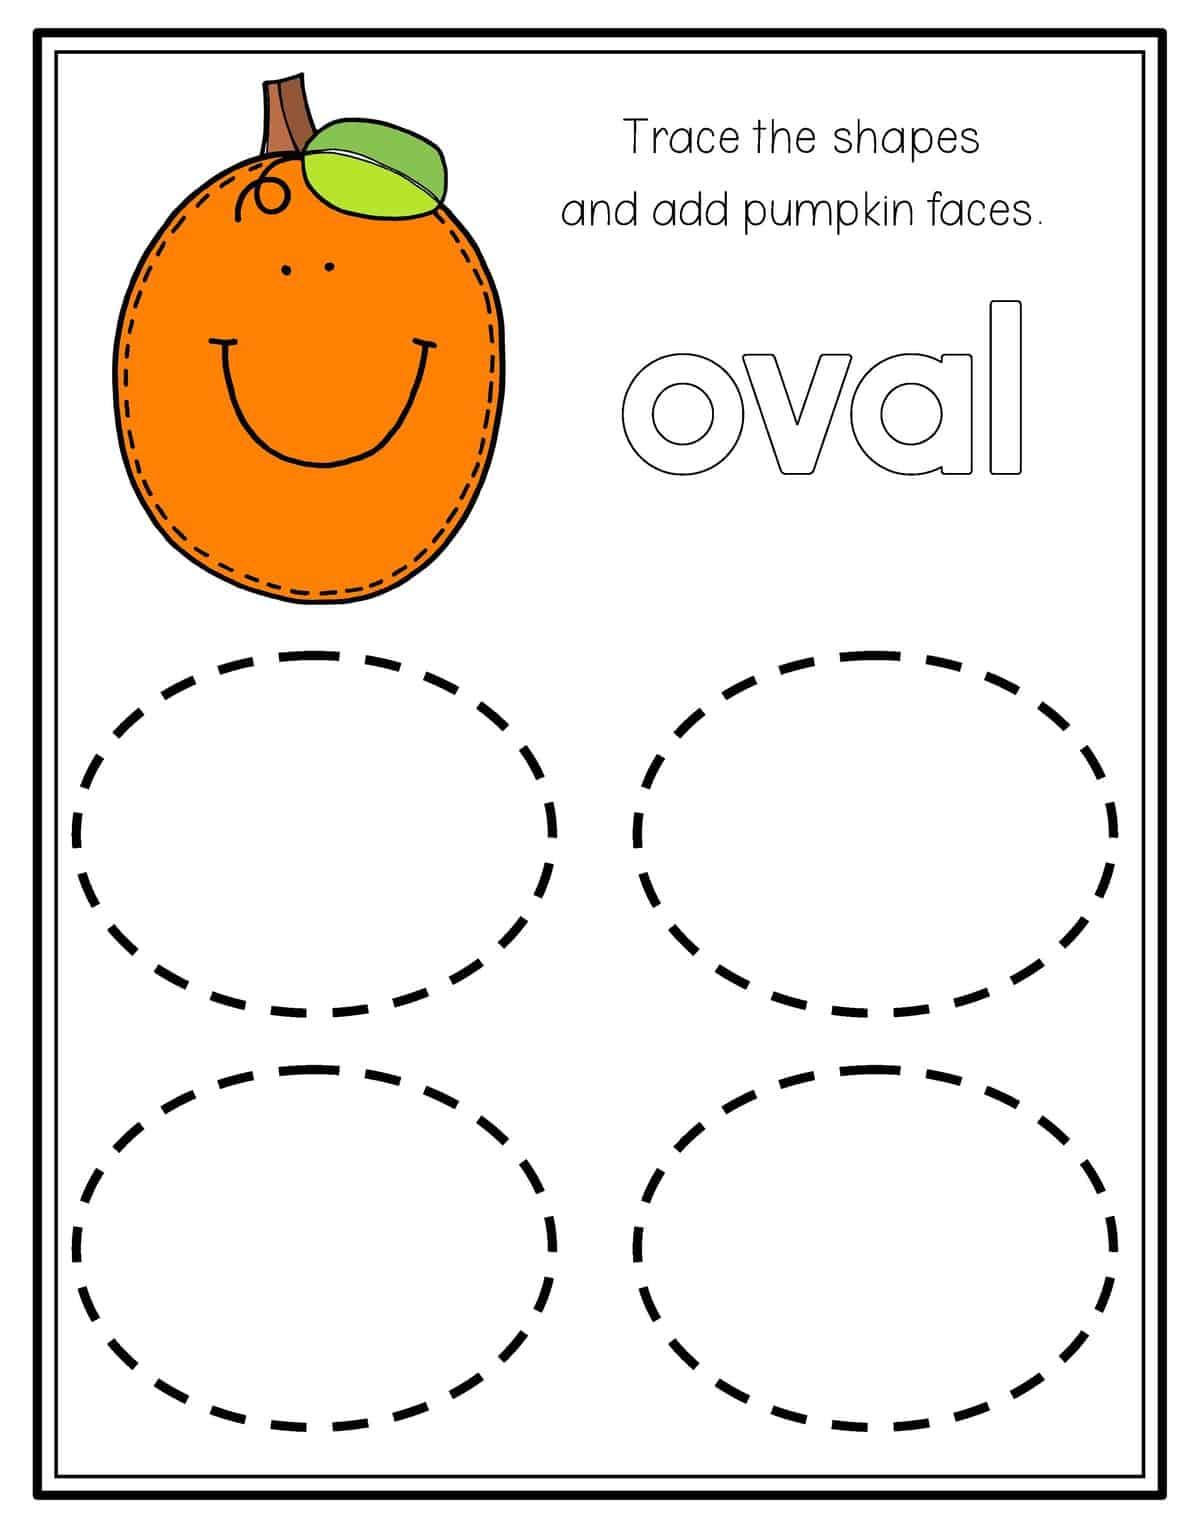 count-the-oval-shapes-shapes-worksheet-kindergarten-shapes